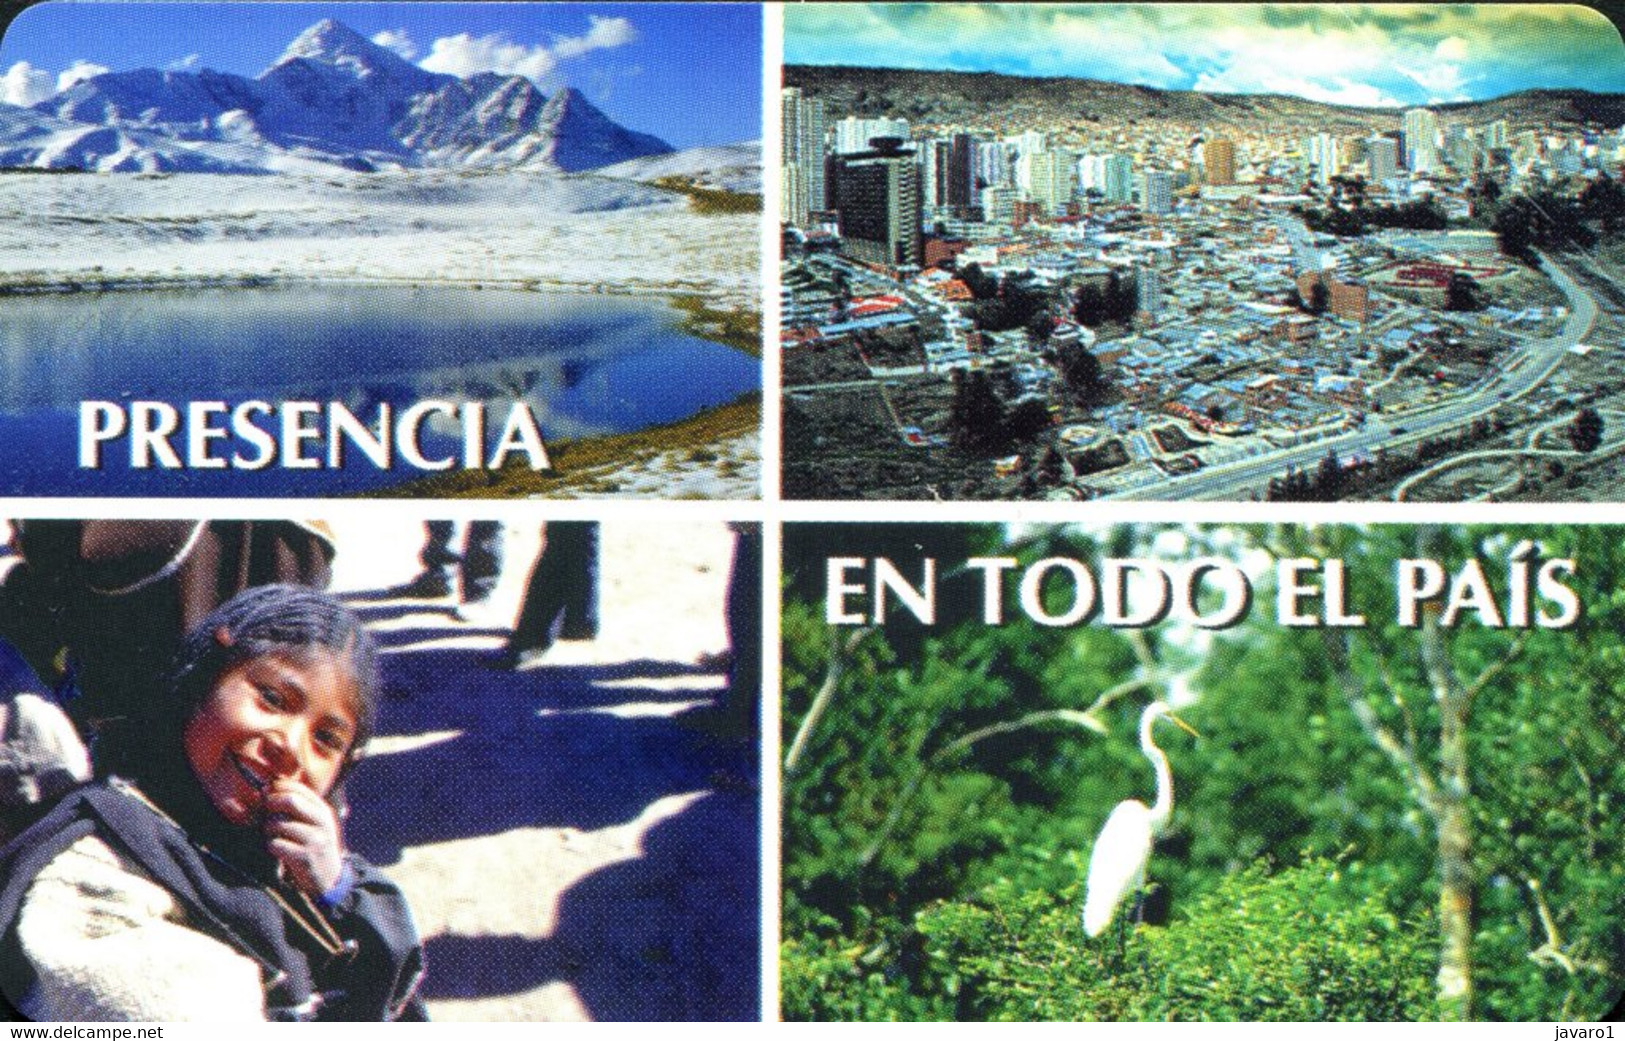 BOLIVIA : BOLU01 Bs 5 Presencia En Todo El Pais MINT Exp: 31/12/98 - Bolivien